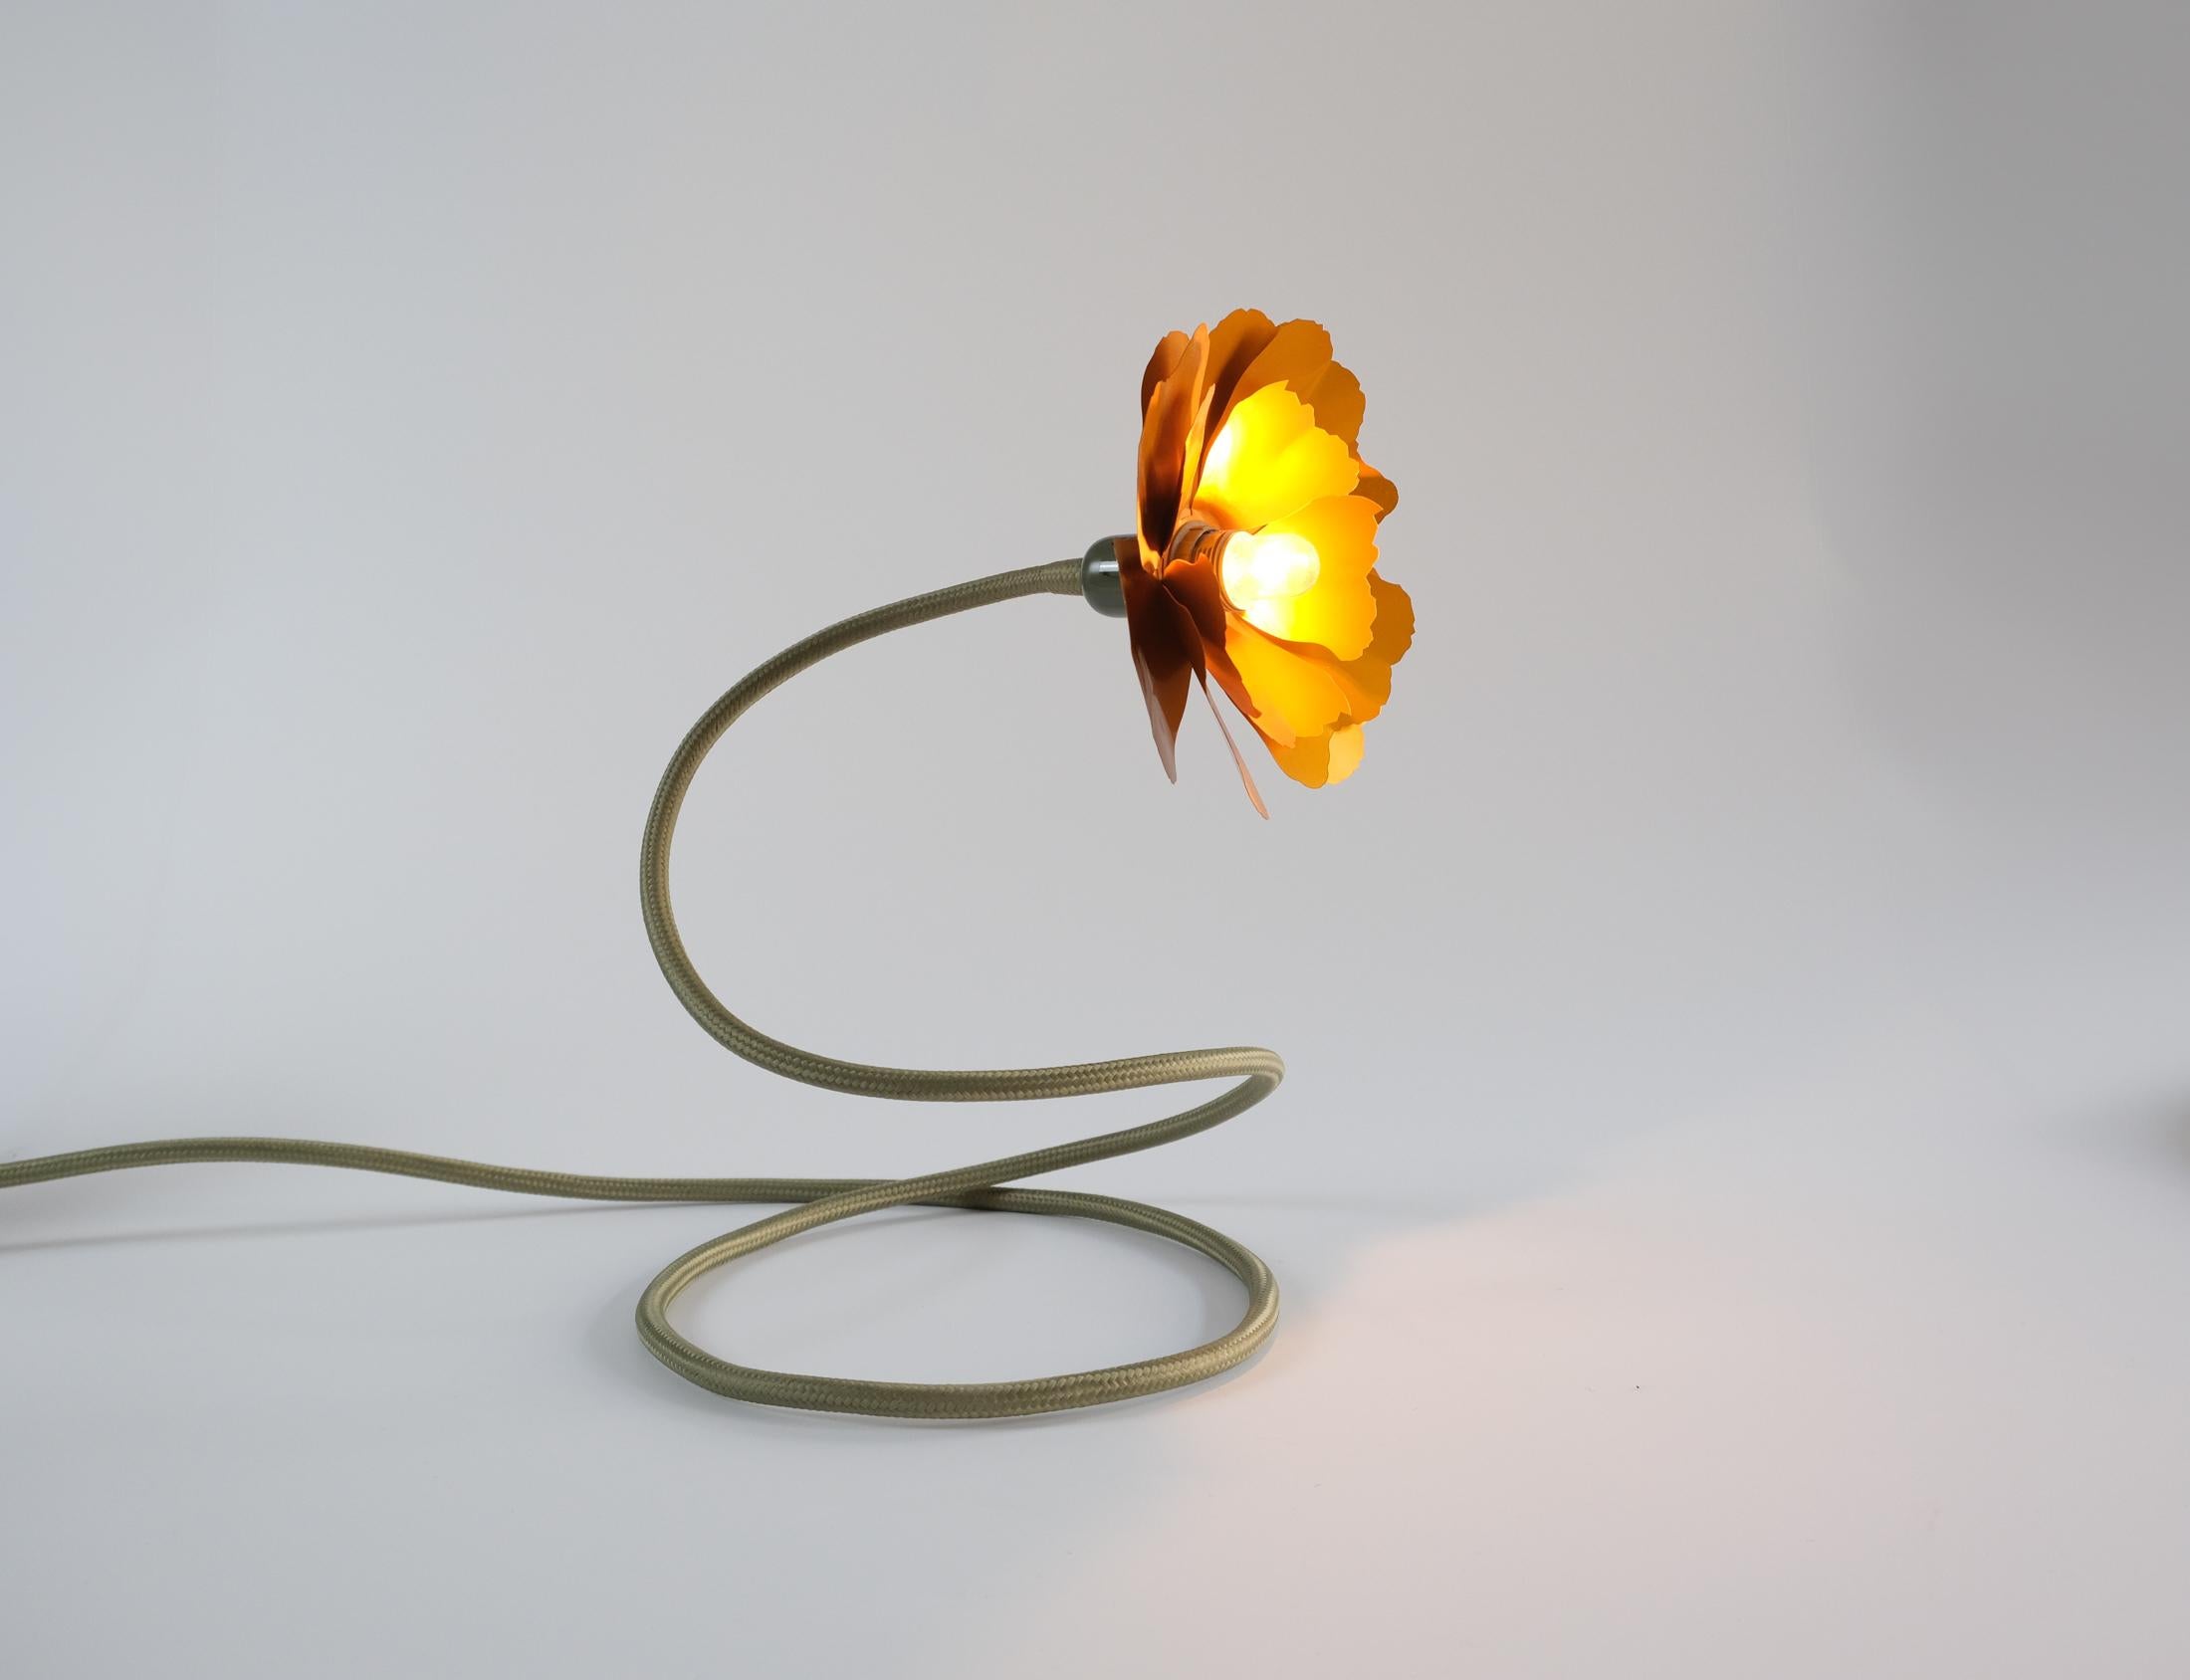 Helena Christensen's Flexible Flower Lamp for Habitat “V.I.P” Collection, 2004 For Sale 1